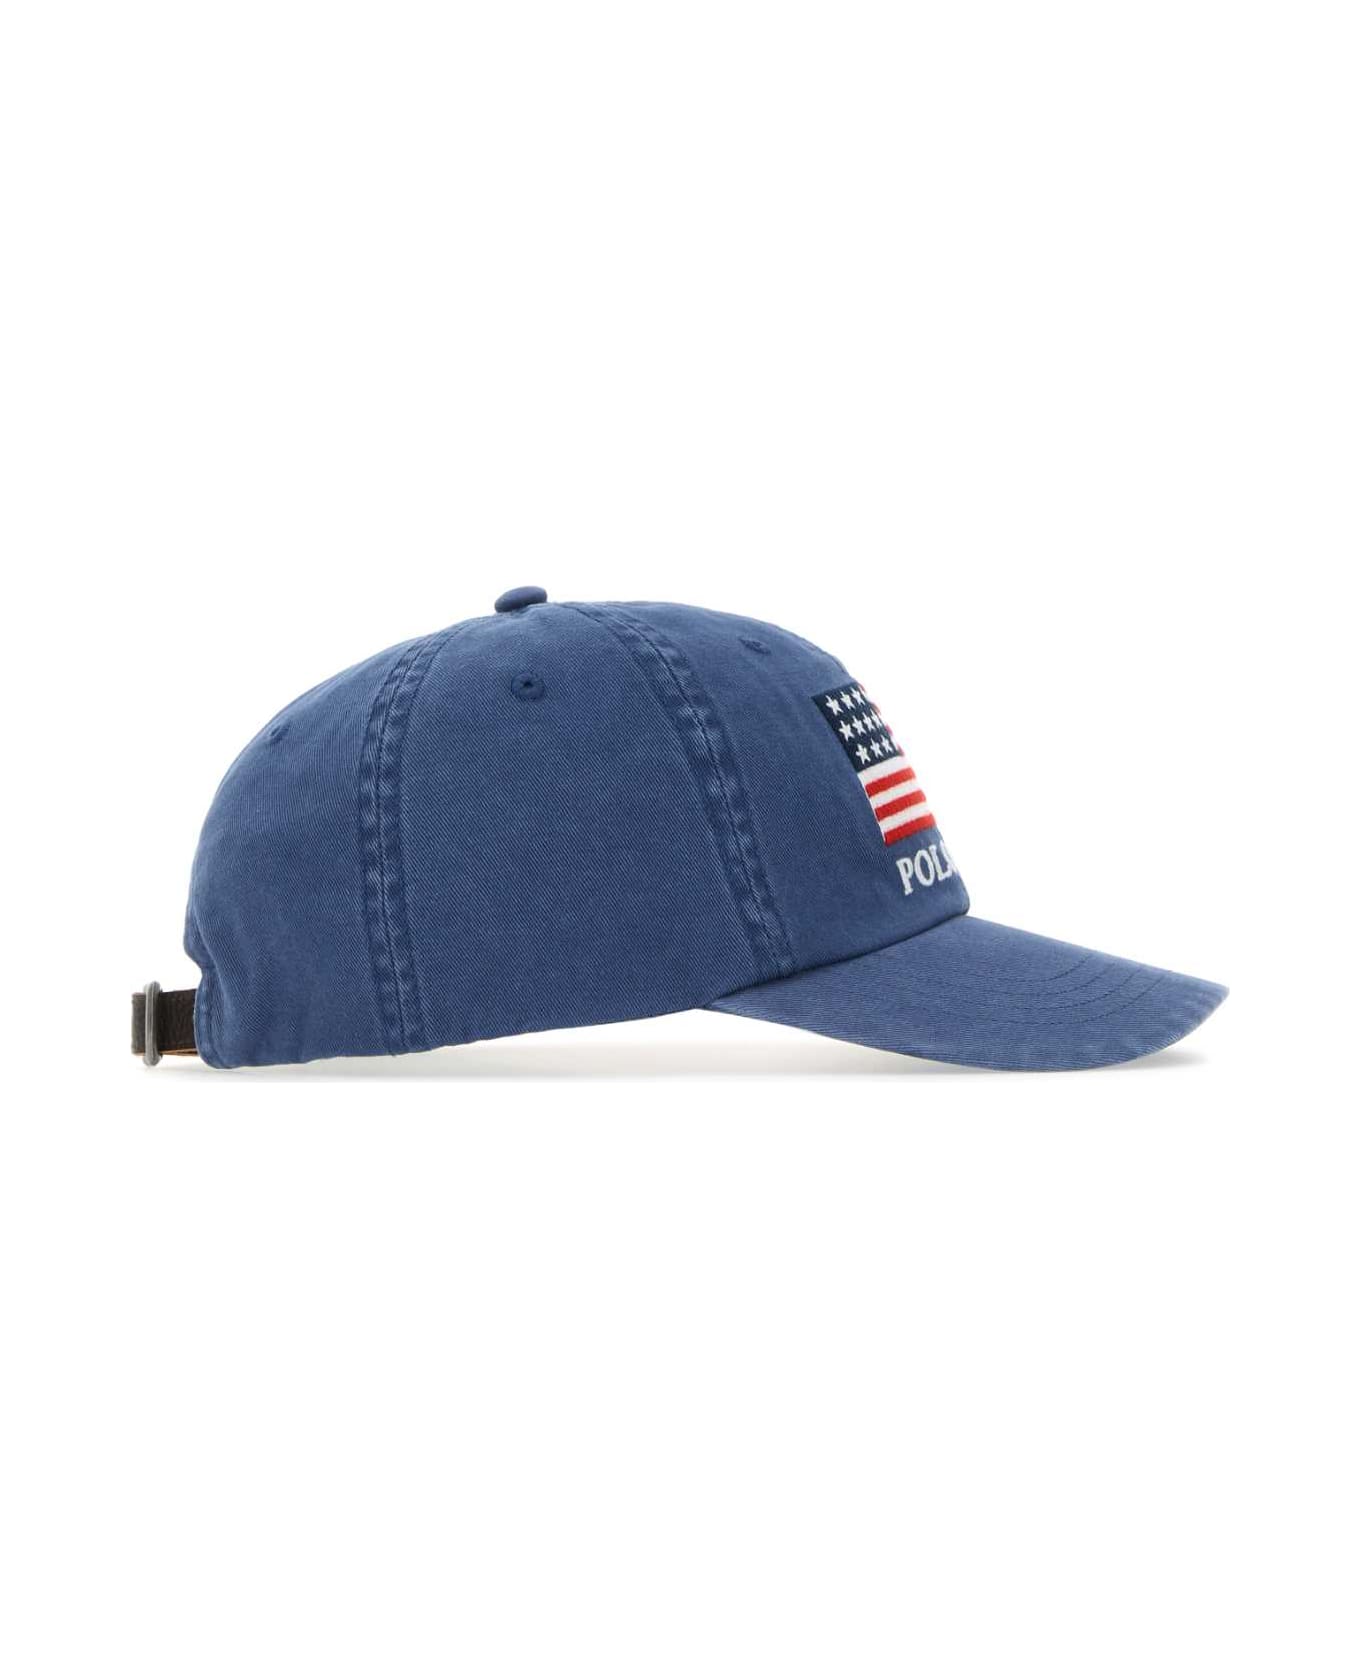 Polo Ralph Lauren Air Force Blue Cotton Baseball Cap - LIGHTNAVY 帽子